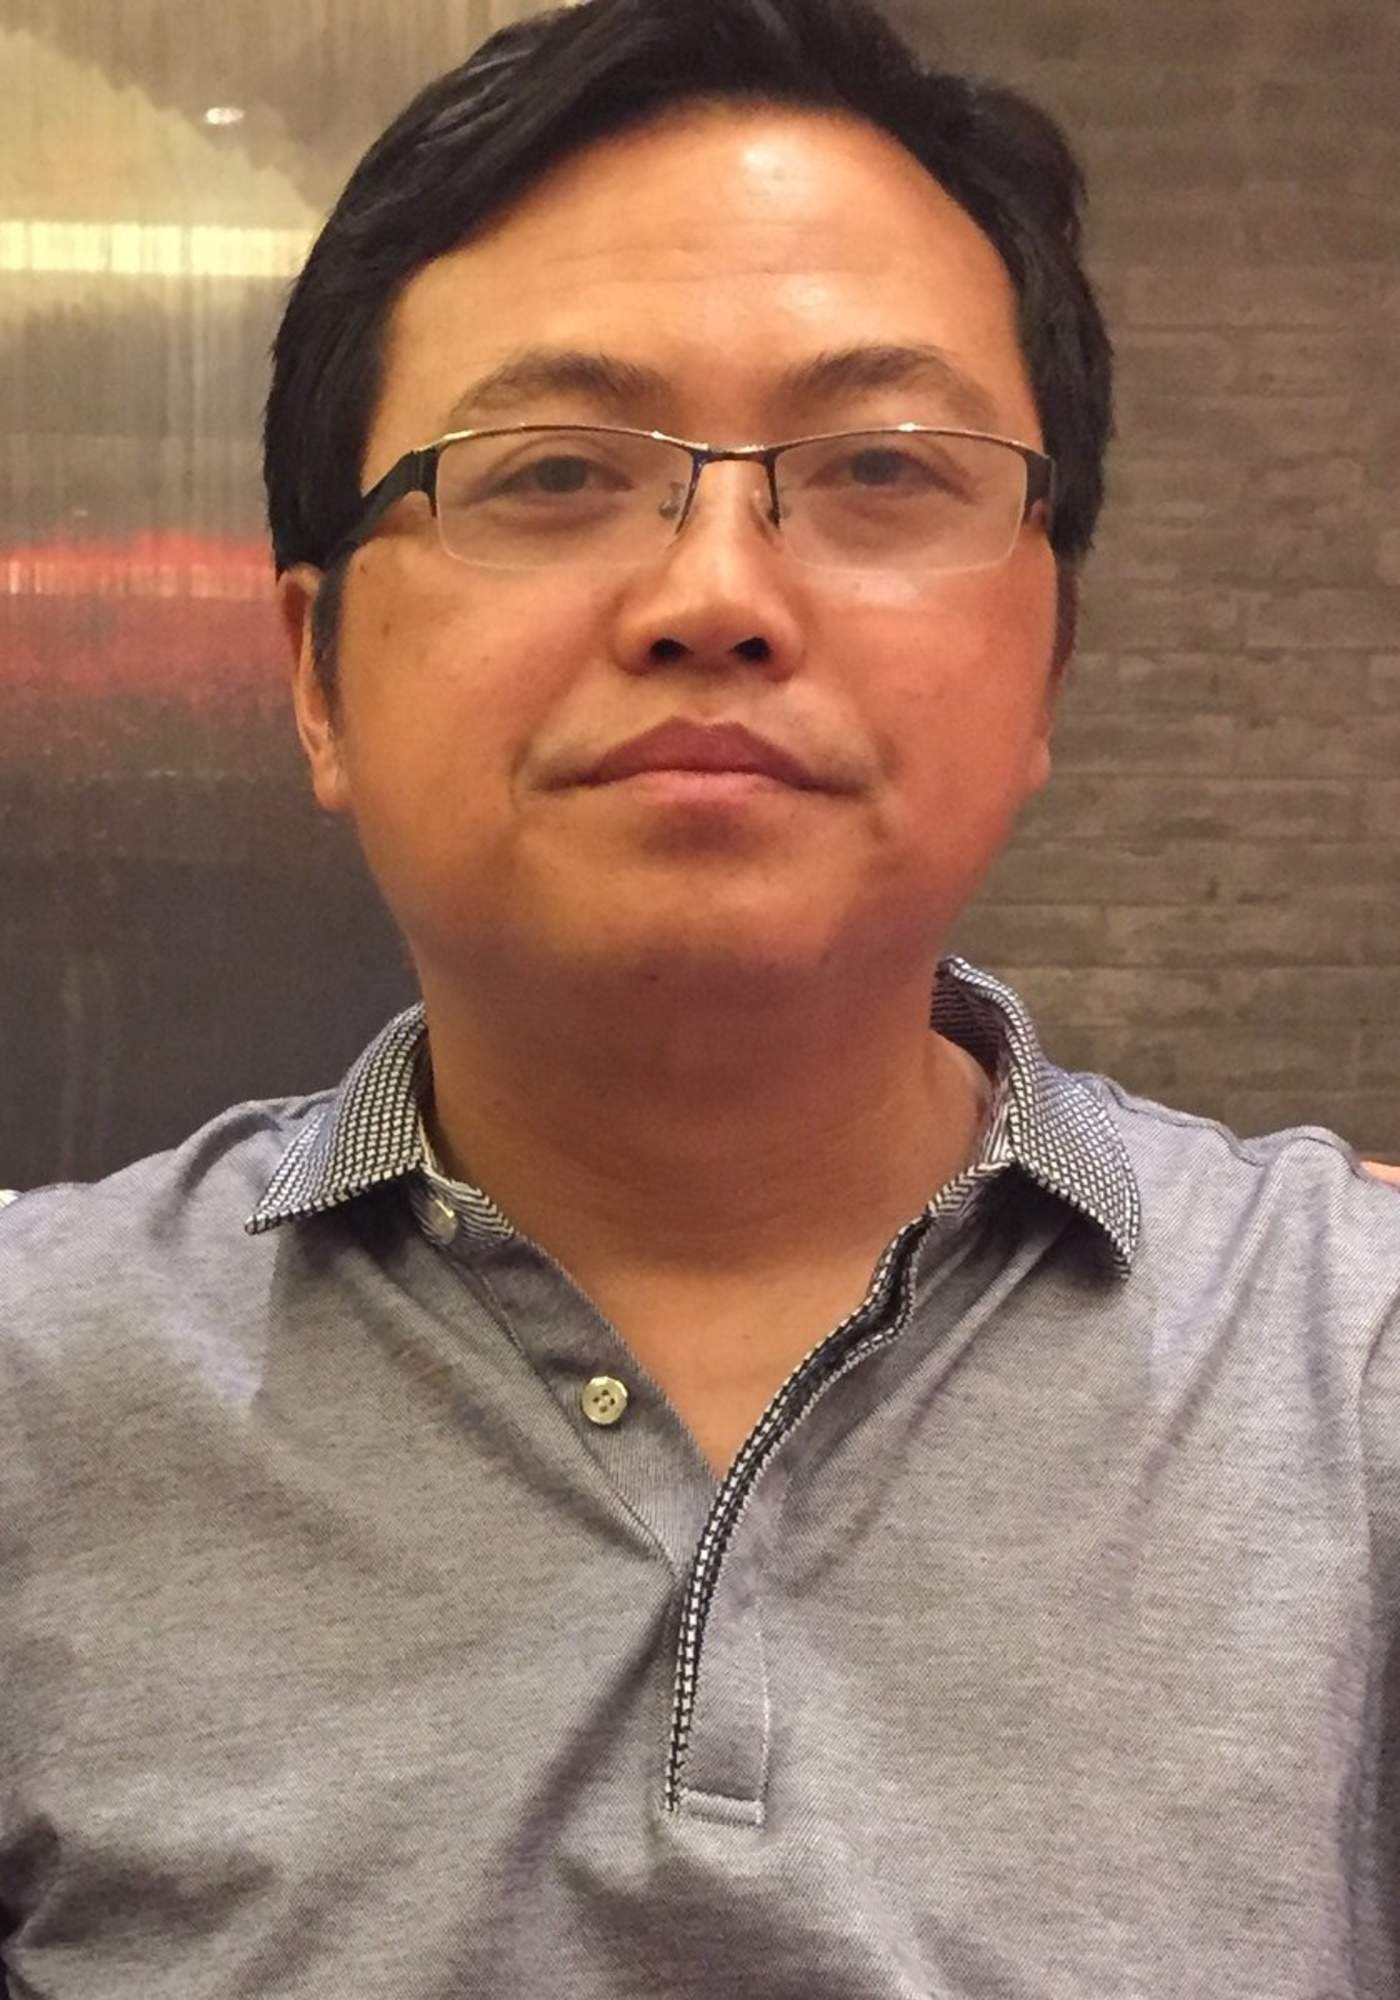 Liu fundó en 2006 la página web Civil Rights & Livelihood Watch (CRLW) y fue detenido a finales de 2016 en su casa de Suizhou (centro), siendo acusado entonces de 'recibir ayuda del extranjero' en actividades para 'incitar a la subversión'. (ARCHIVO)